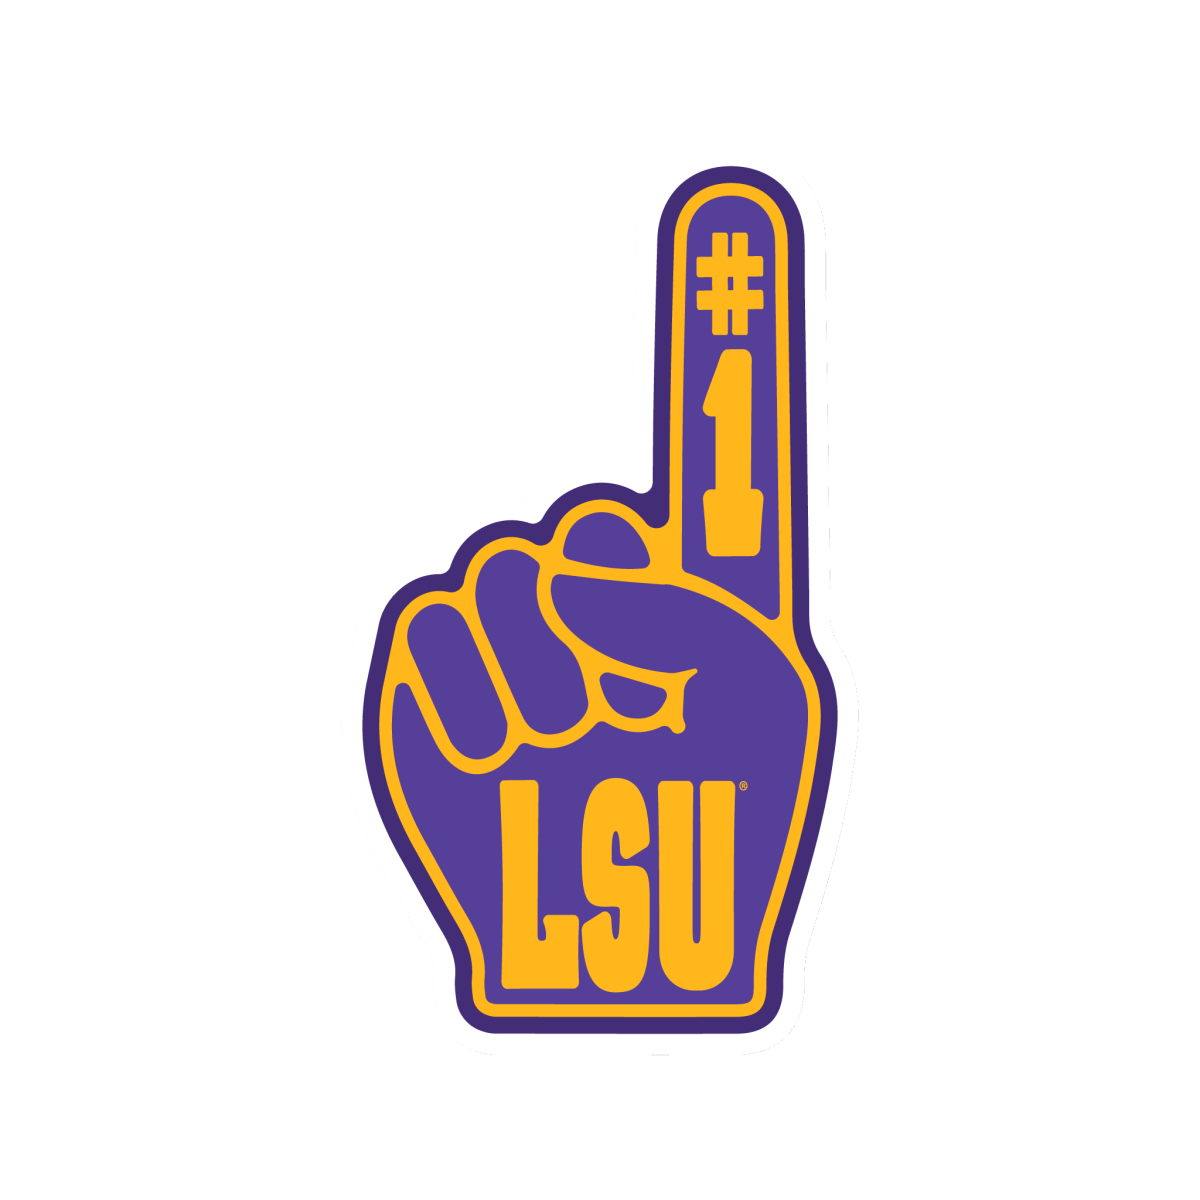 LSU Foam Finger Sticker - Shop B-Unlimited